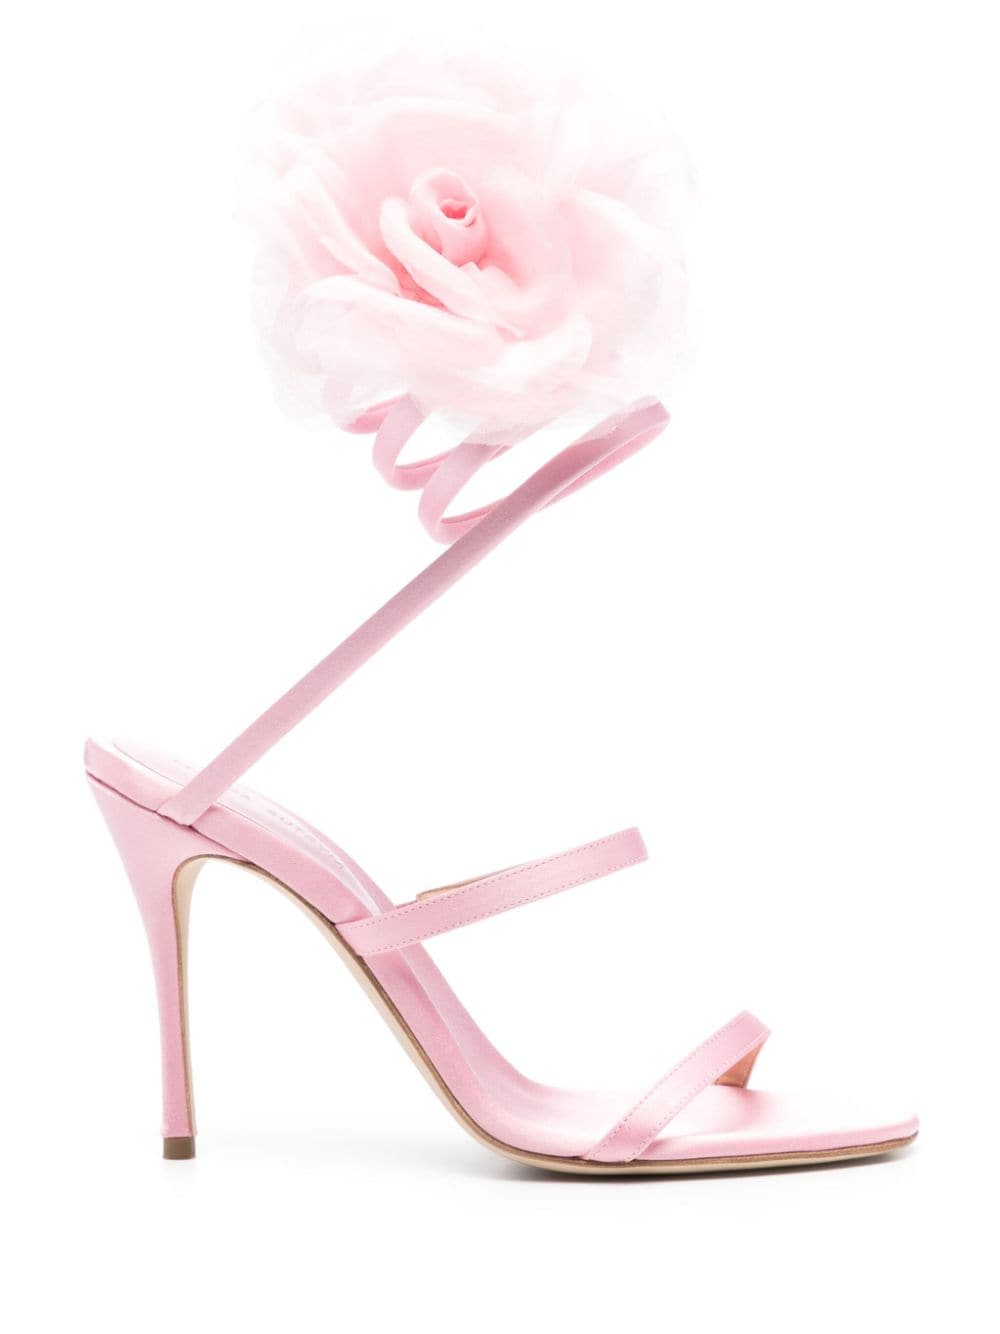 Magda Butrym 105mm satin sandals - Pink von Magda Butrym